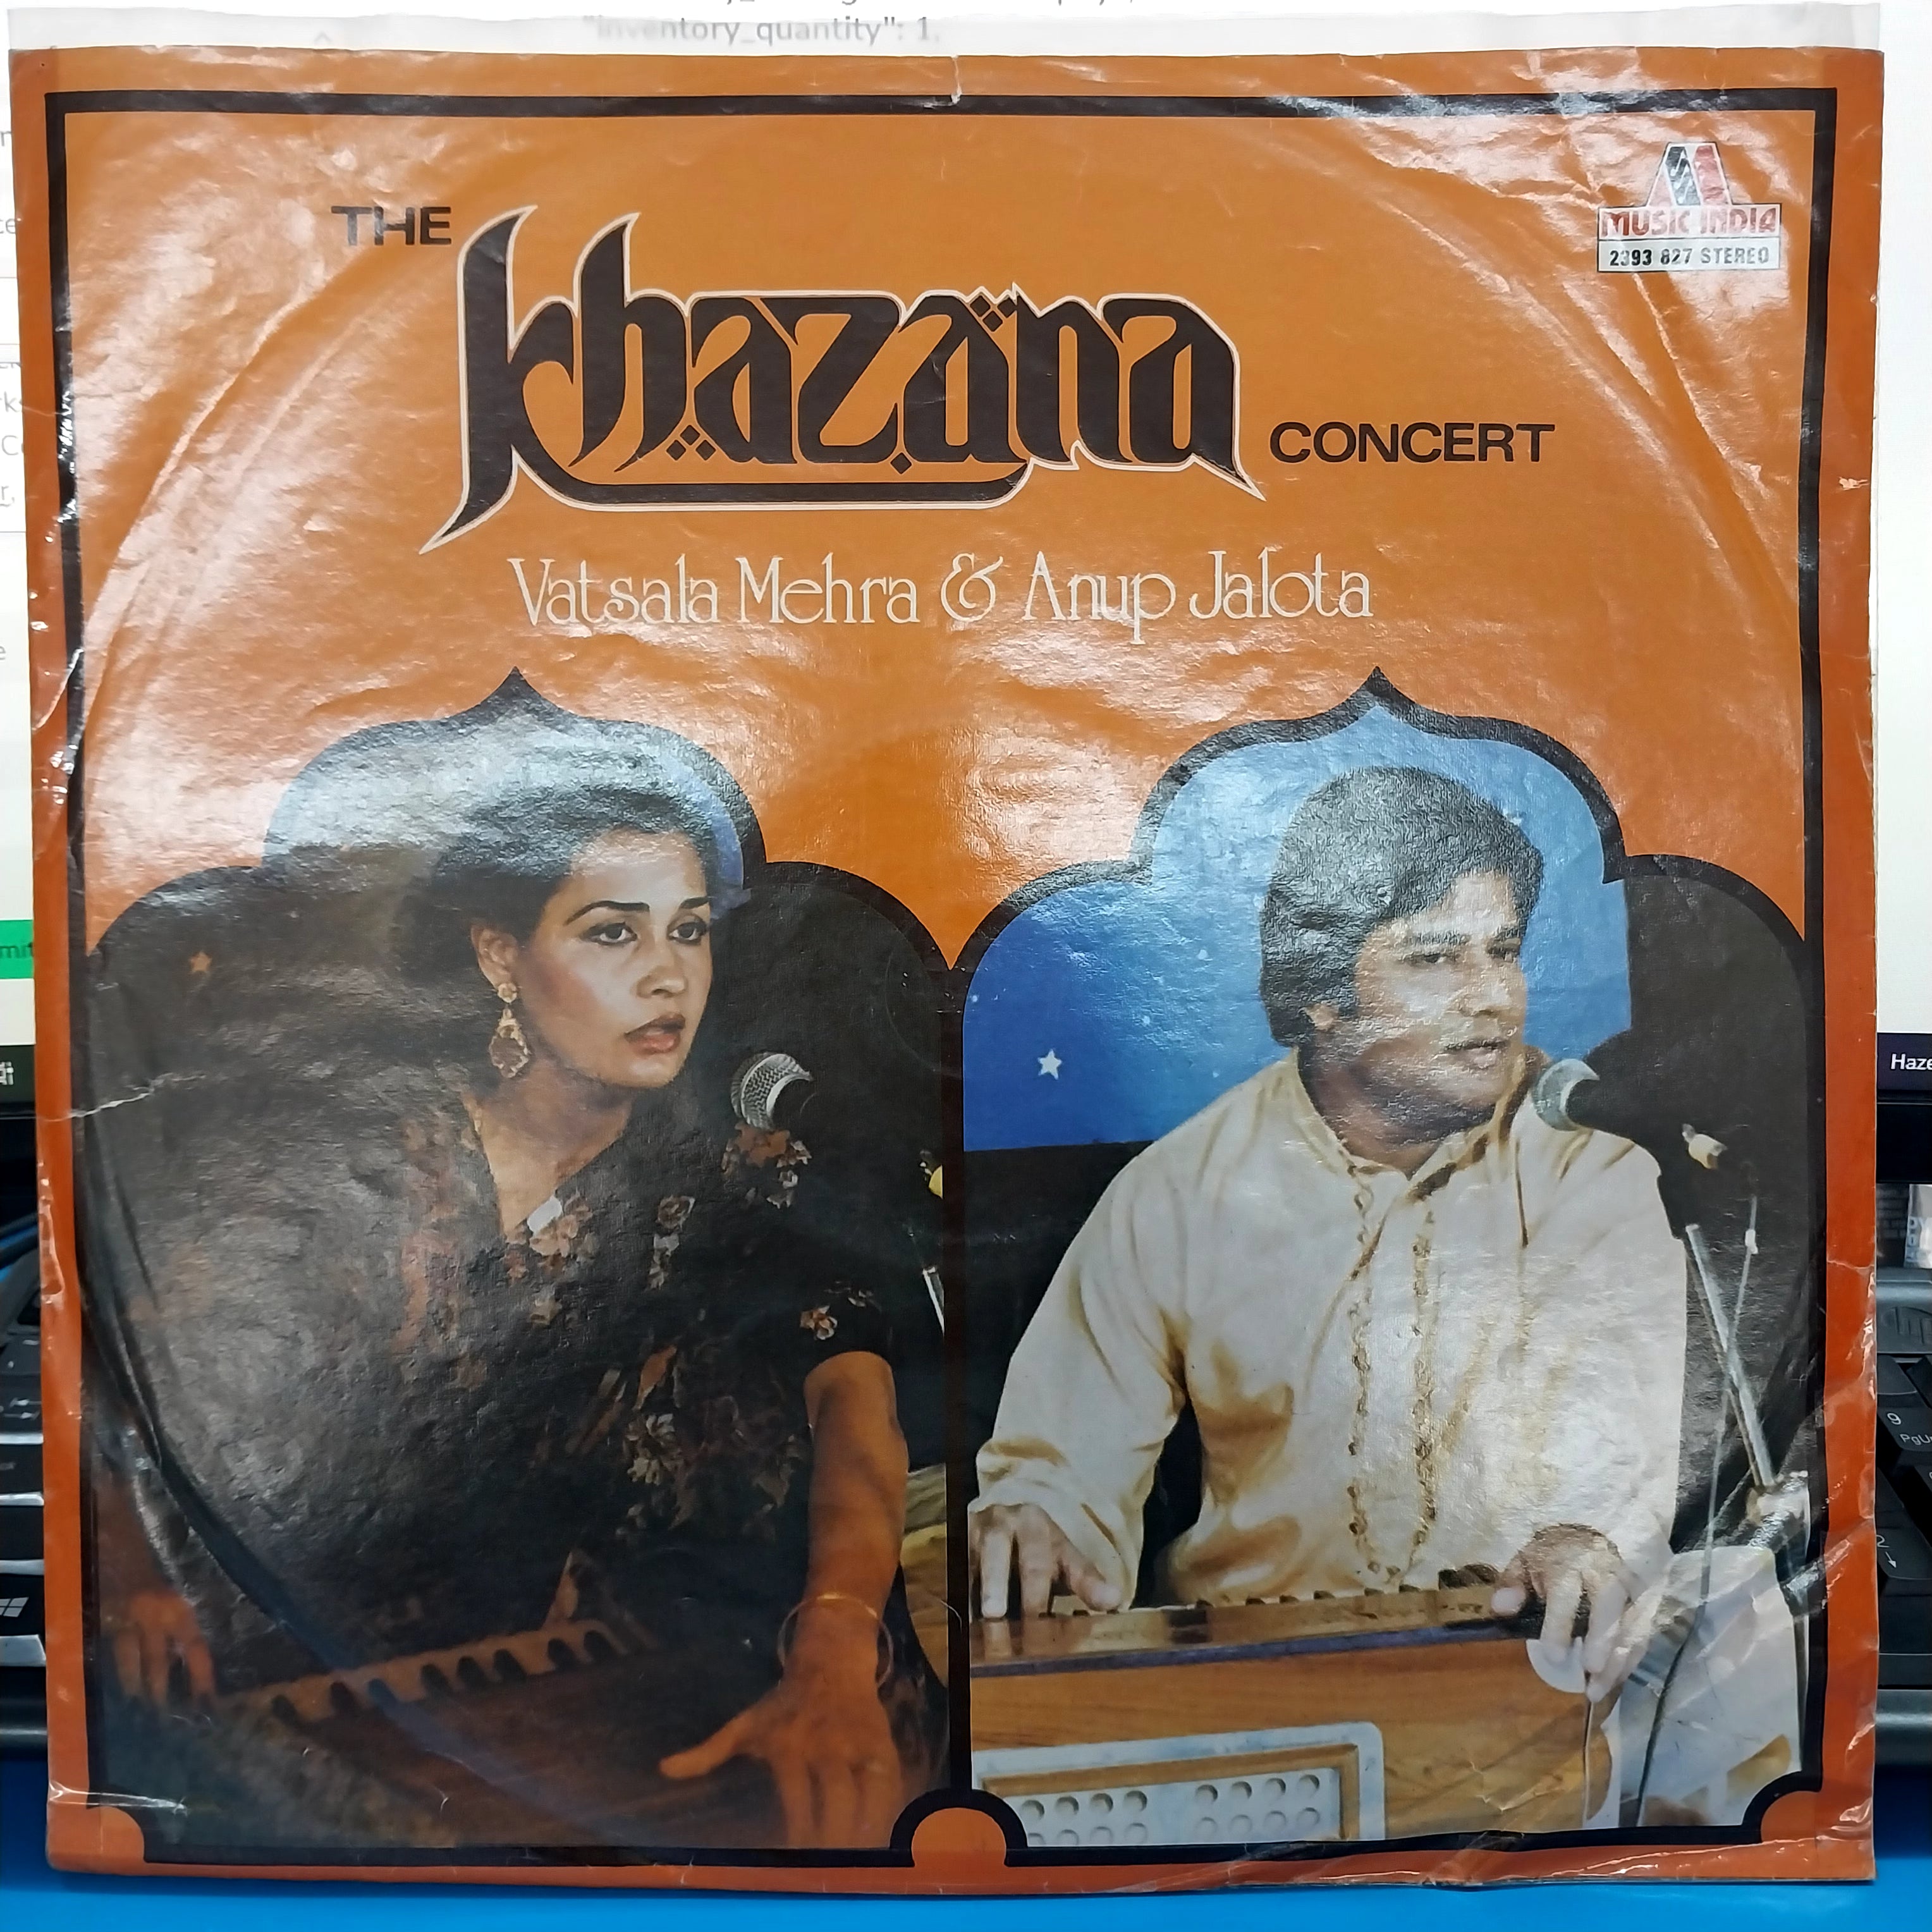 vatsala mehra & anup jalota - The khazana concert (Vinyl)